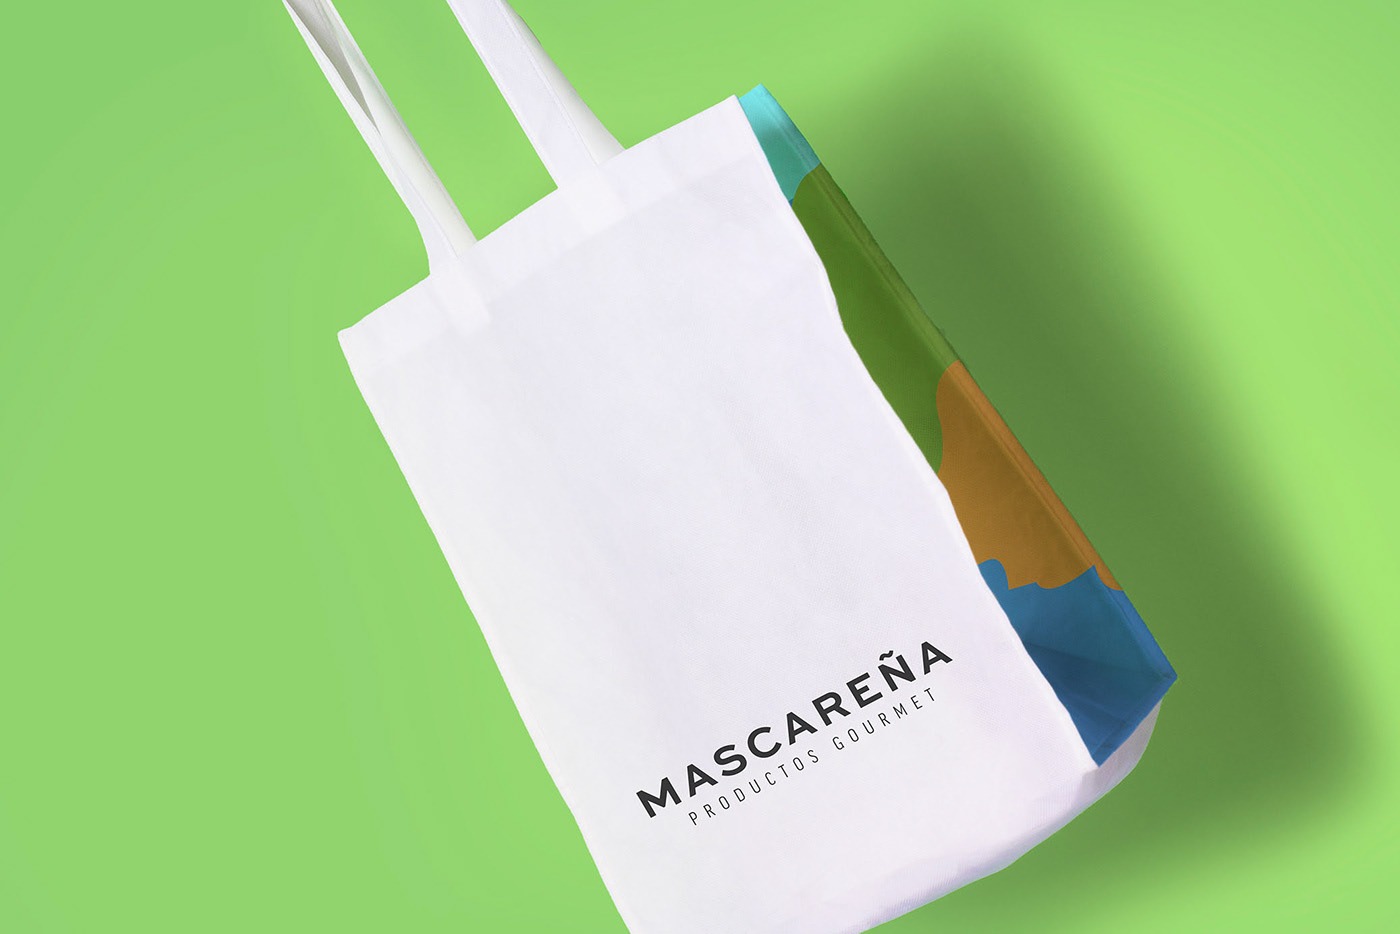 Mascare~na天然食品包装设计